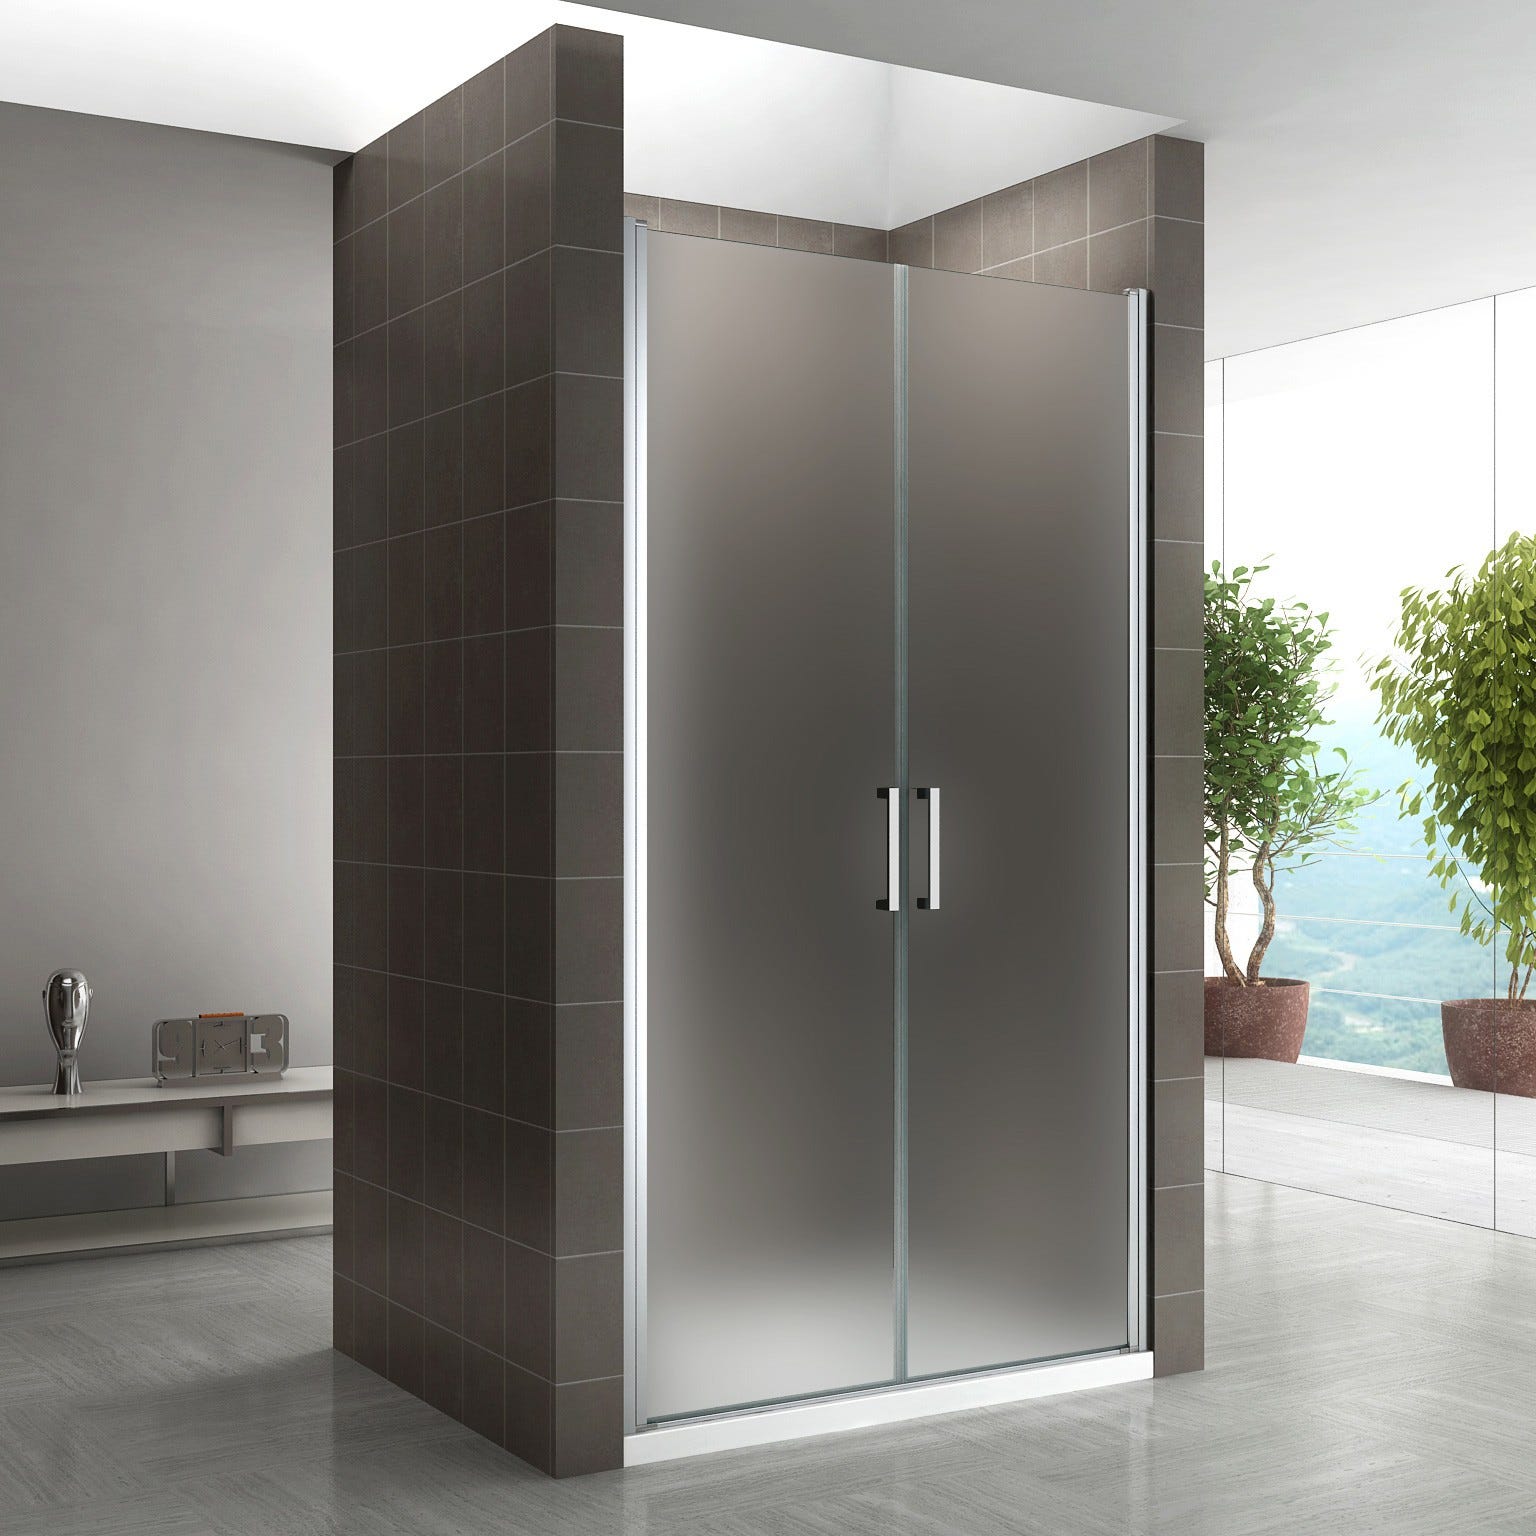 KAYA porte de douche H 185 largeur réglable 98 à 101 cm verre opaque 0